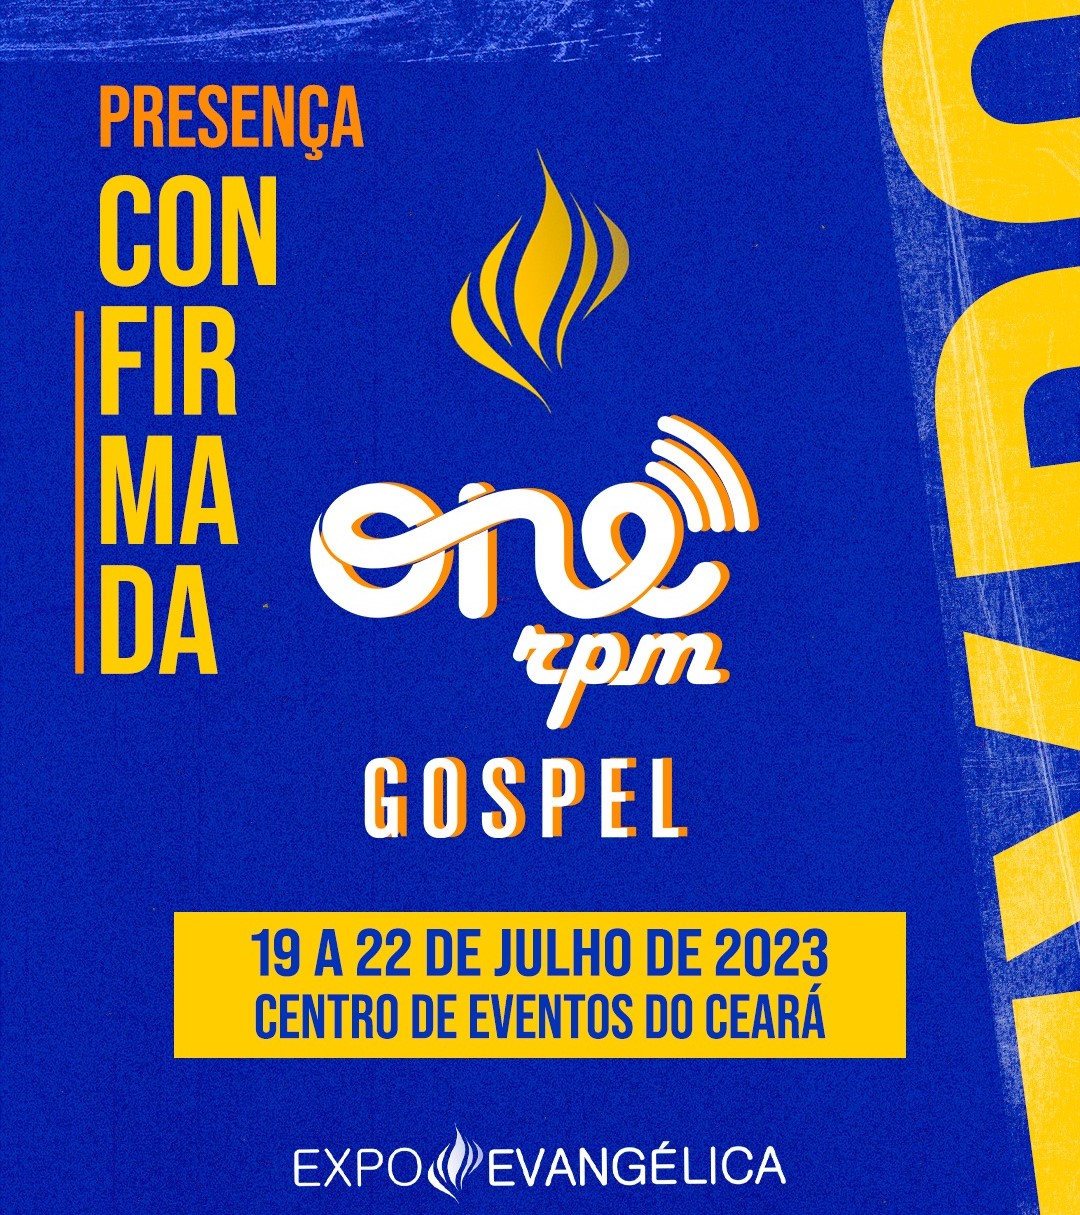 ONErpm Gospel marca presença na Expo Evangélica 2023